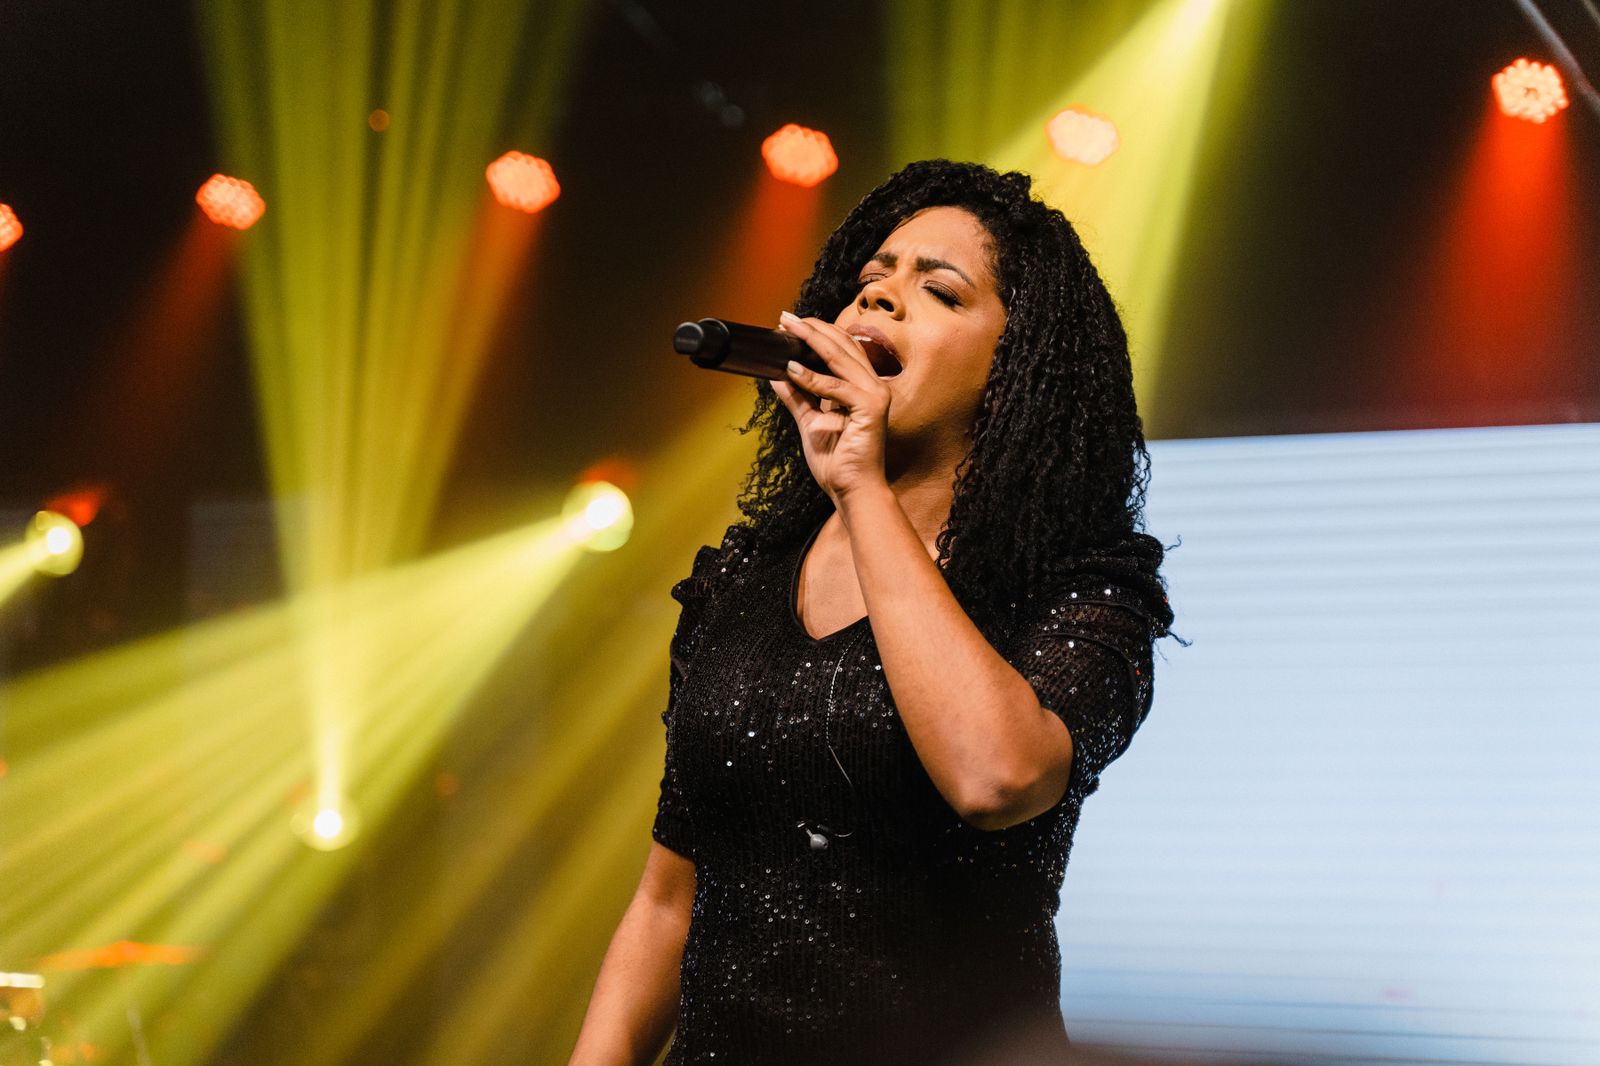 Kemilly Santos canta mensagem de força em “Limite”